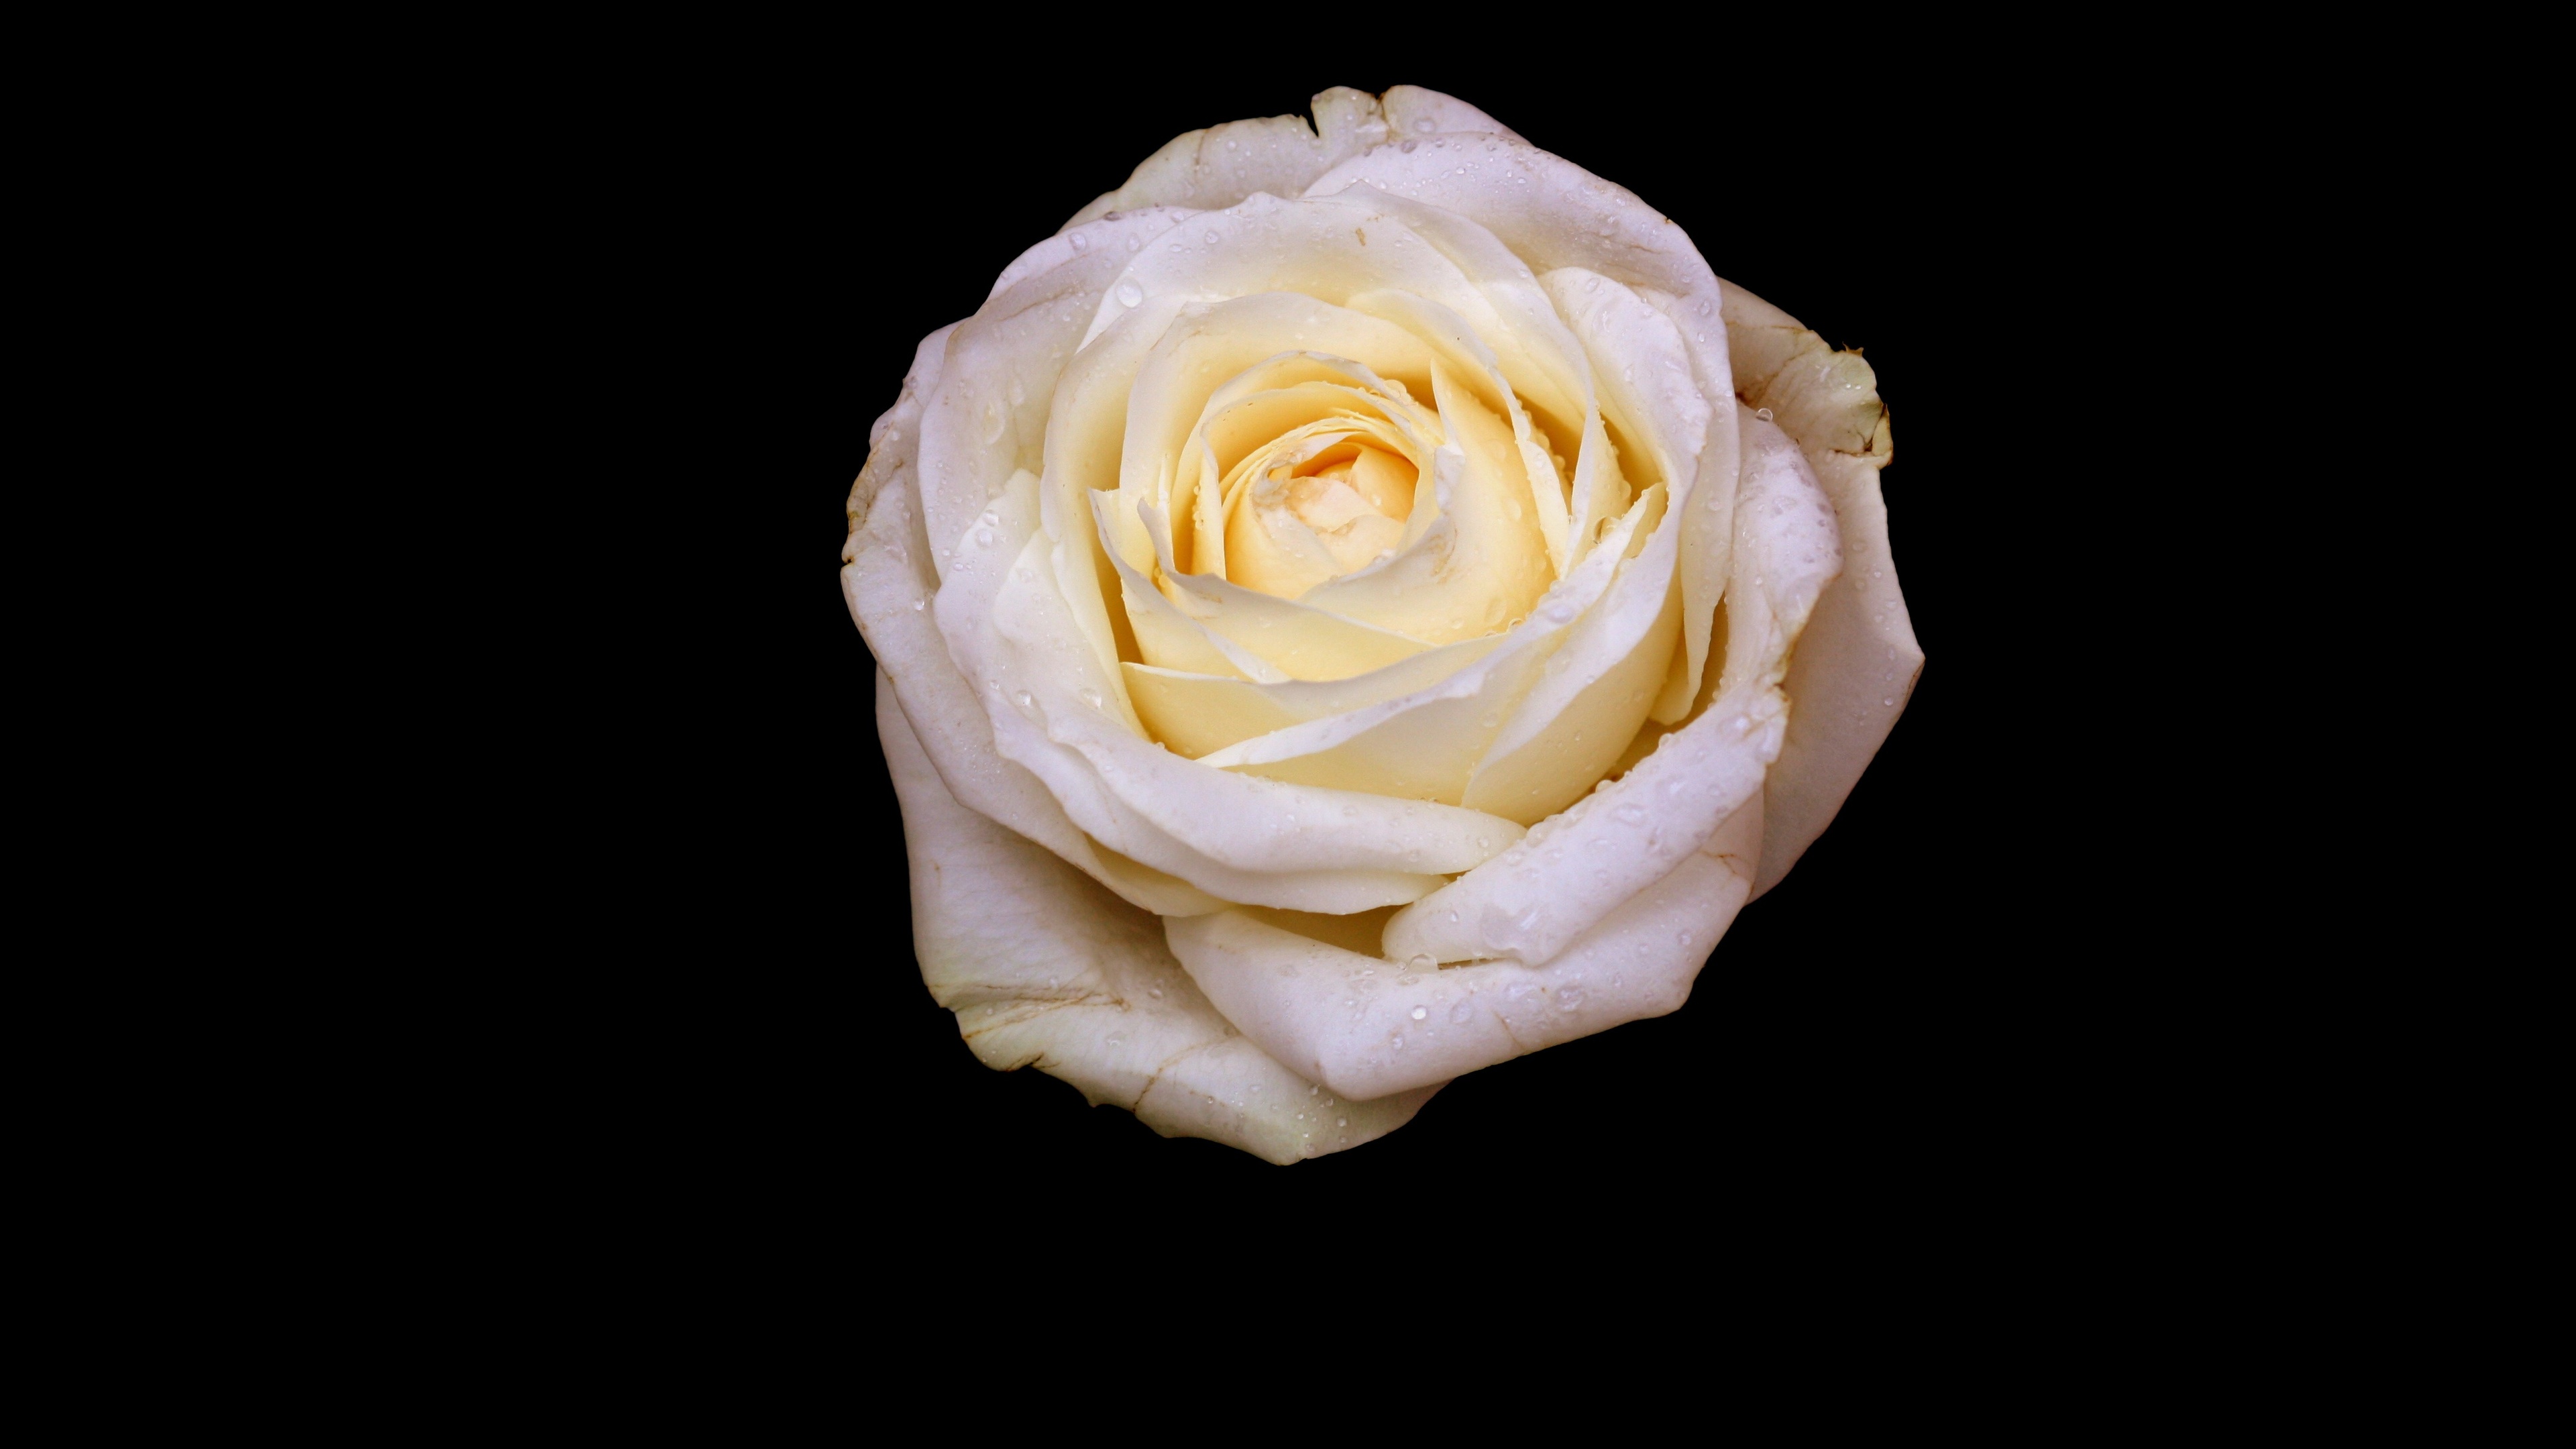 壁纸 : 玫瑰, 芽, 花瓣, 光, 黑色背景 1680x1050 - goodfon - 690631 - 电脑桌面壁纸 - WallHere 壁纸库